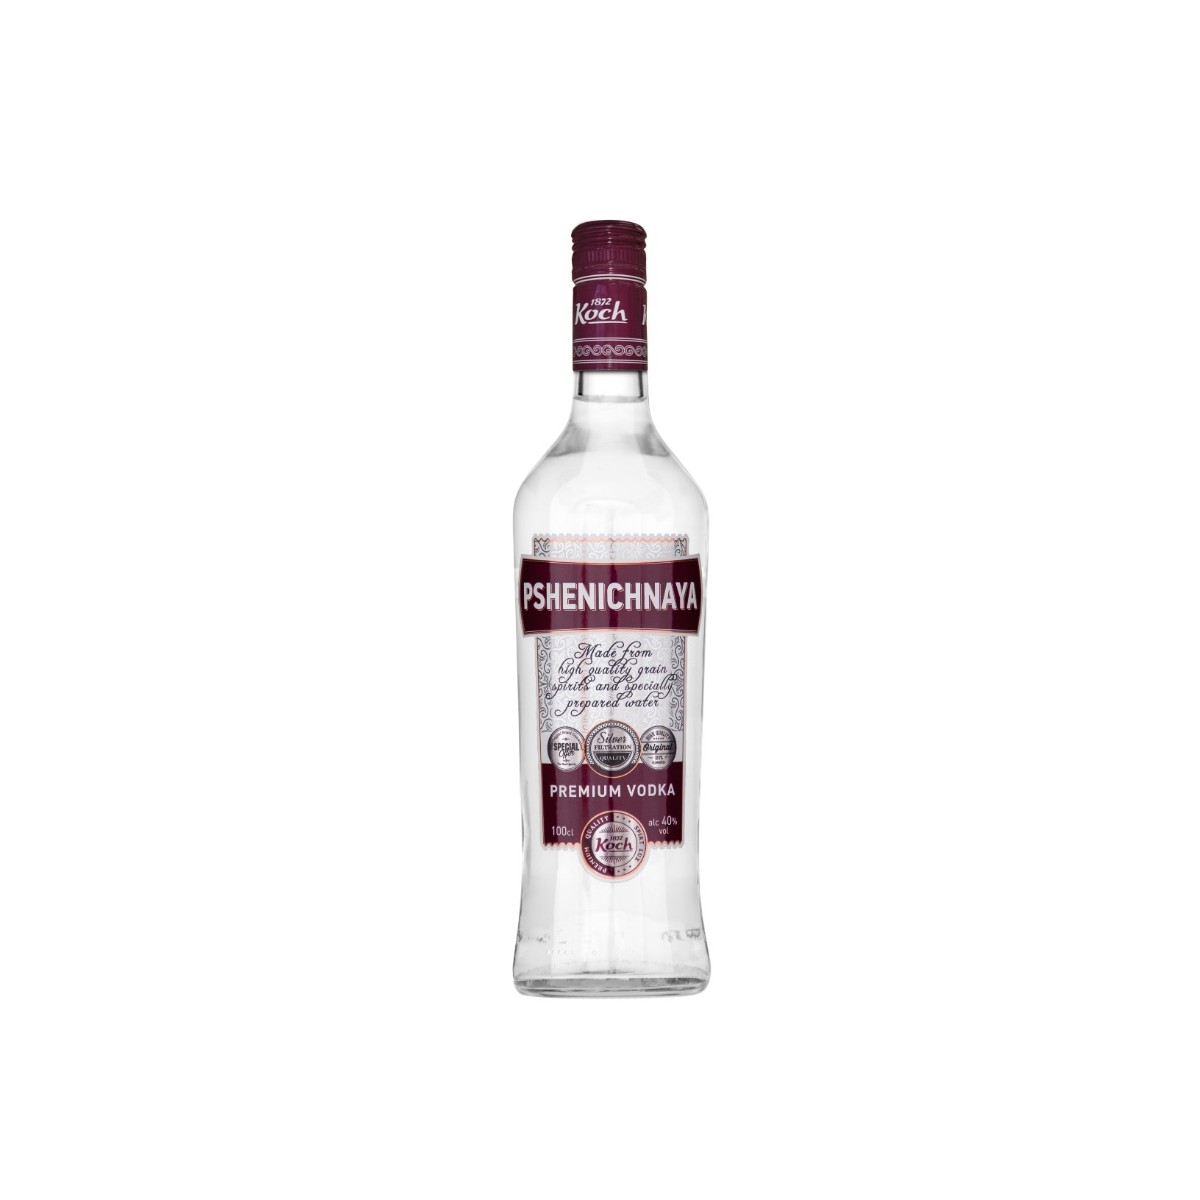 Pshenichnaya Vodka Premium 40% 100cl